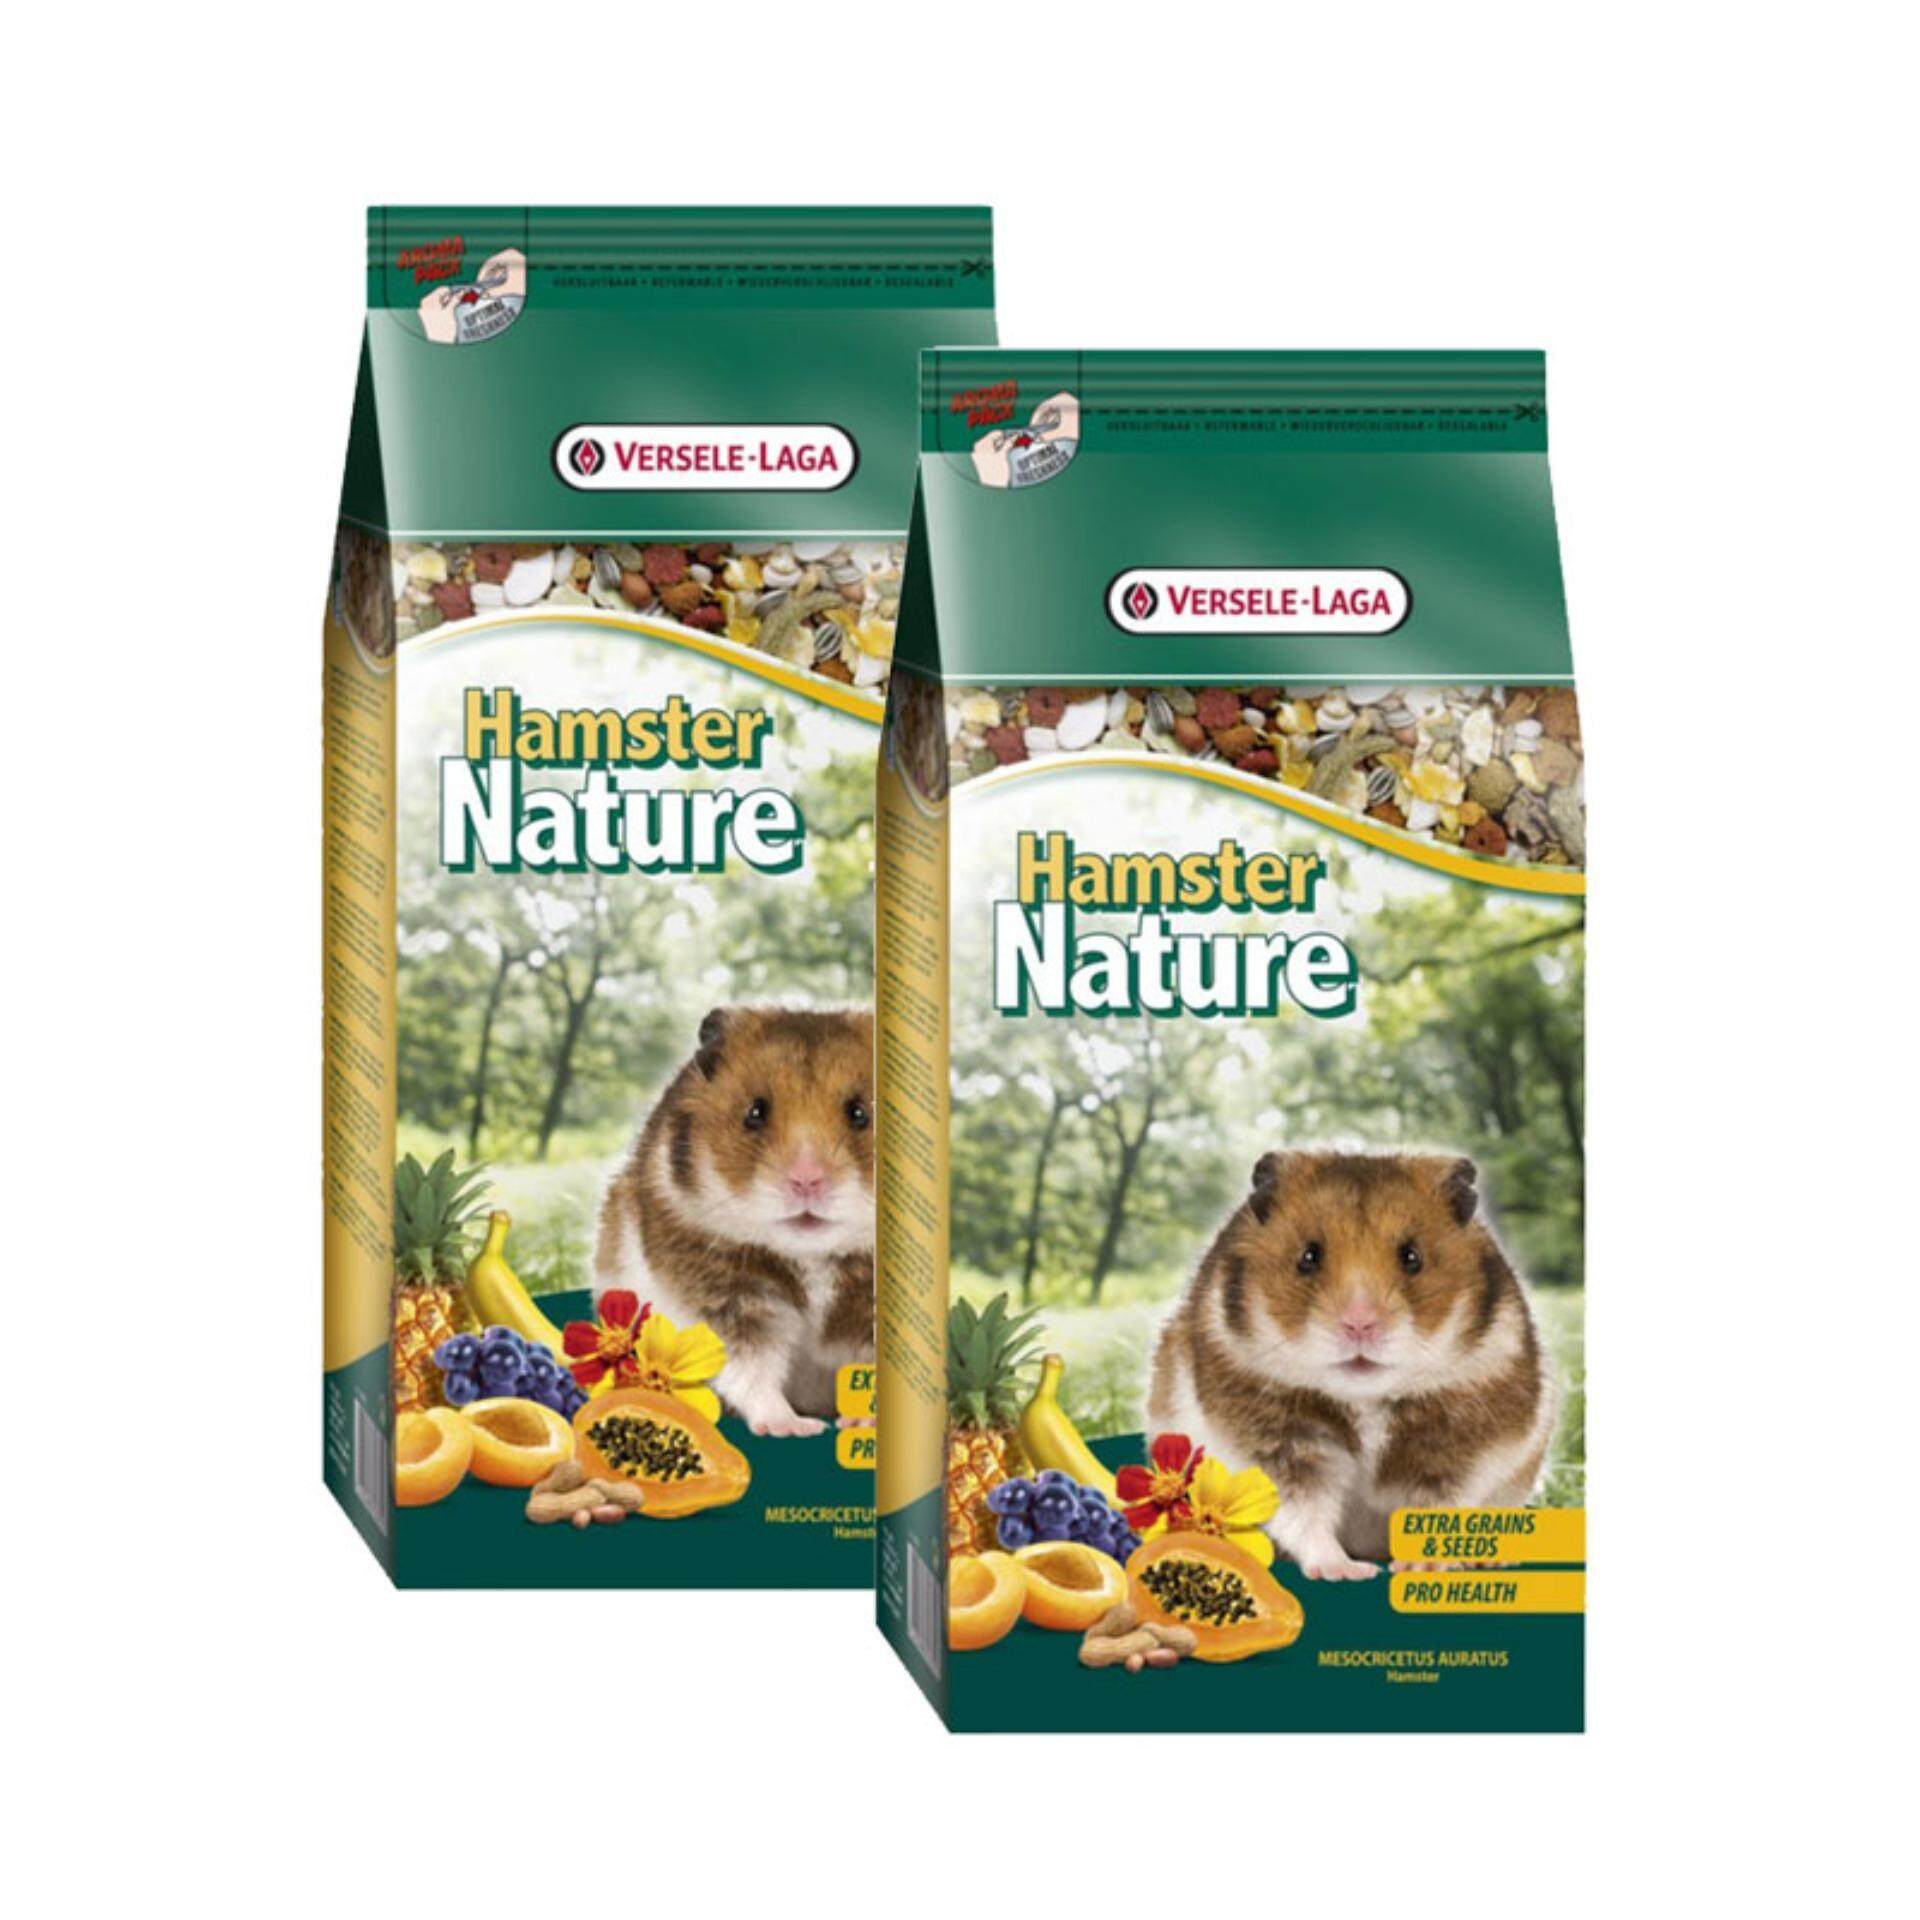 VERSELE-LAGA Hamster Nature Extra Grains&Seeds (750g :2 ถุง) อาหารหนูมินิแฮมเตอร์ สูตรเพิ่มธัญพืชและเมล็ดอาหาร